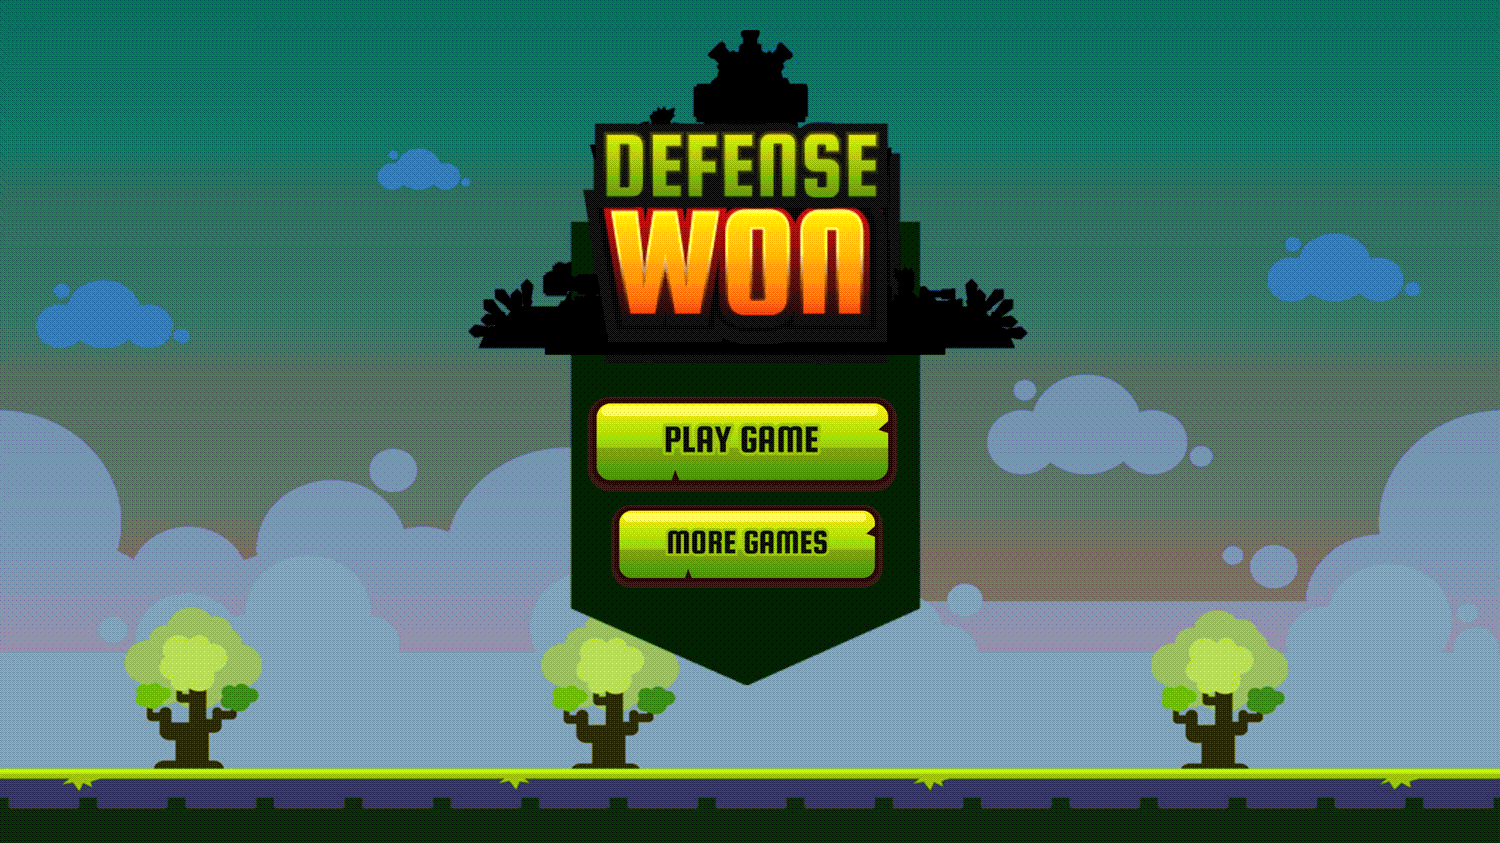 Base Defense Game Won Screen Screenshot.